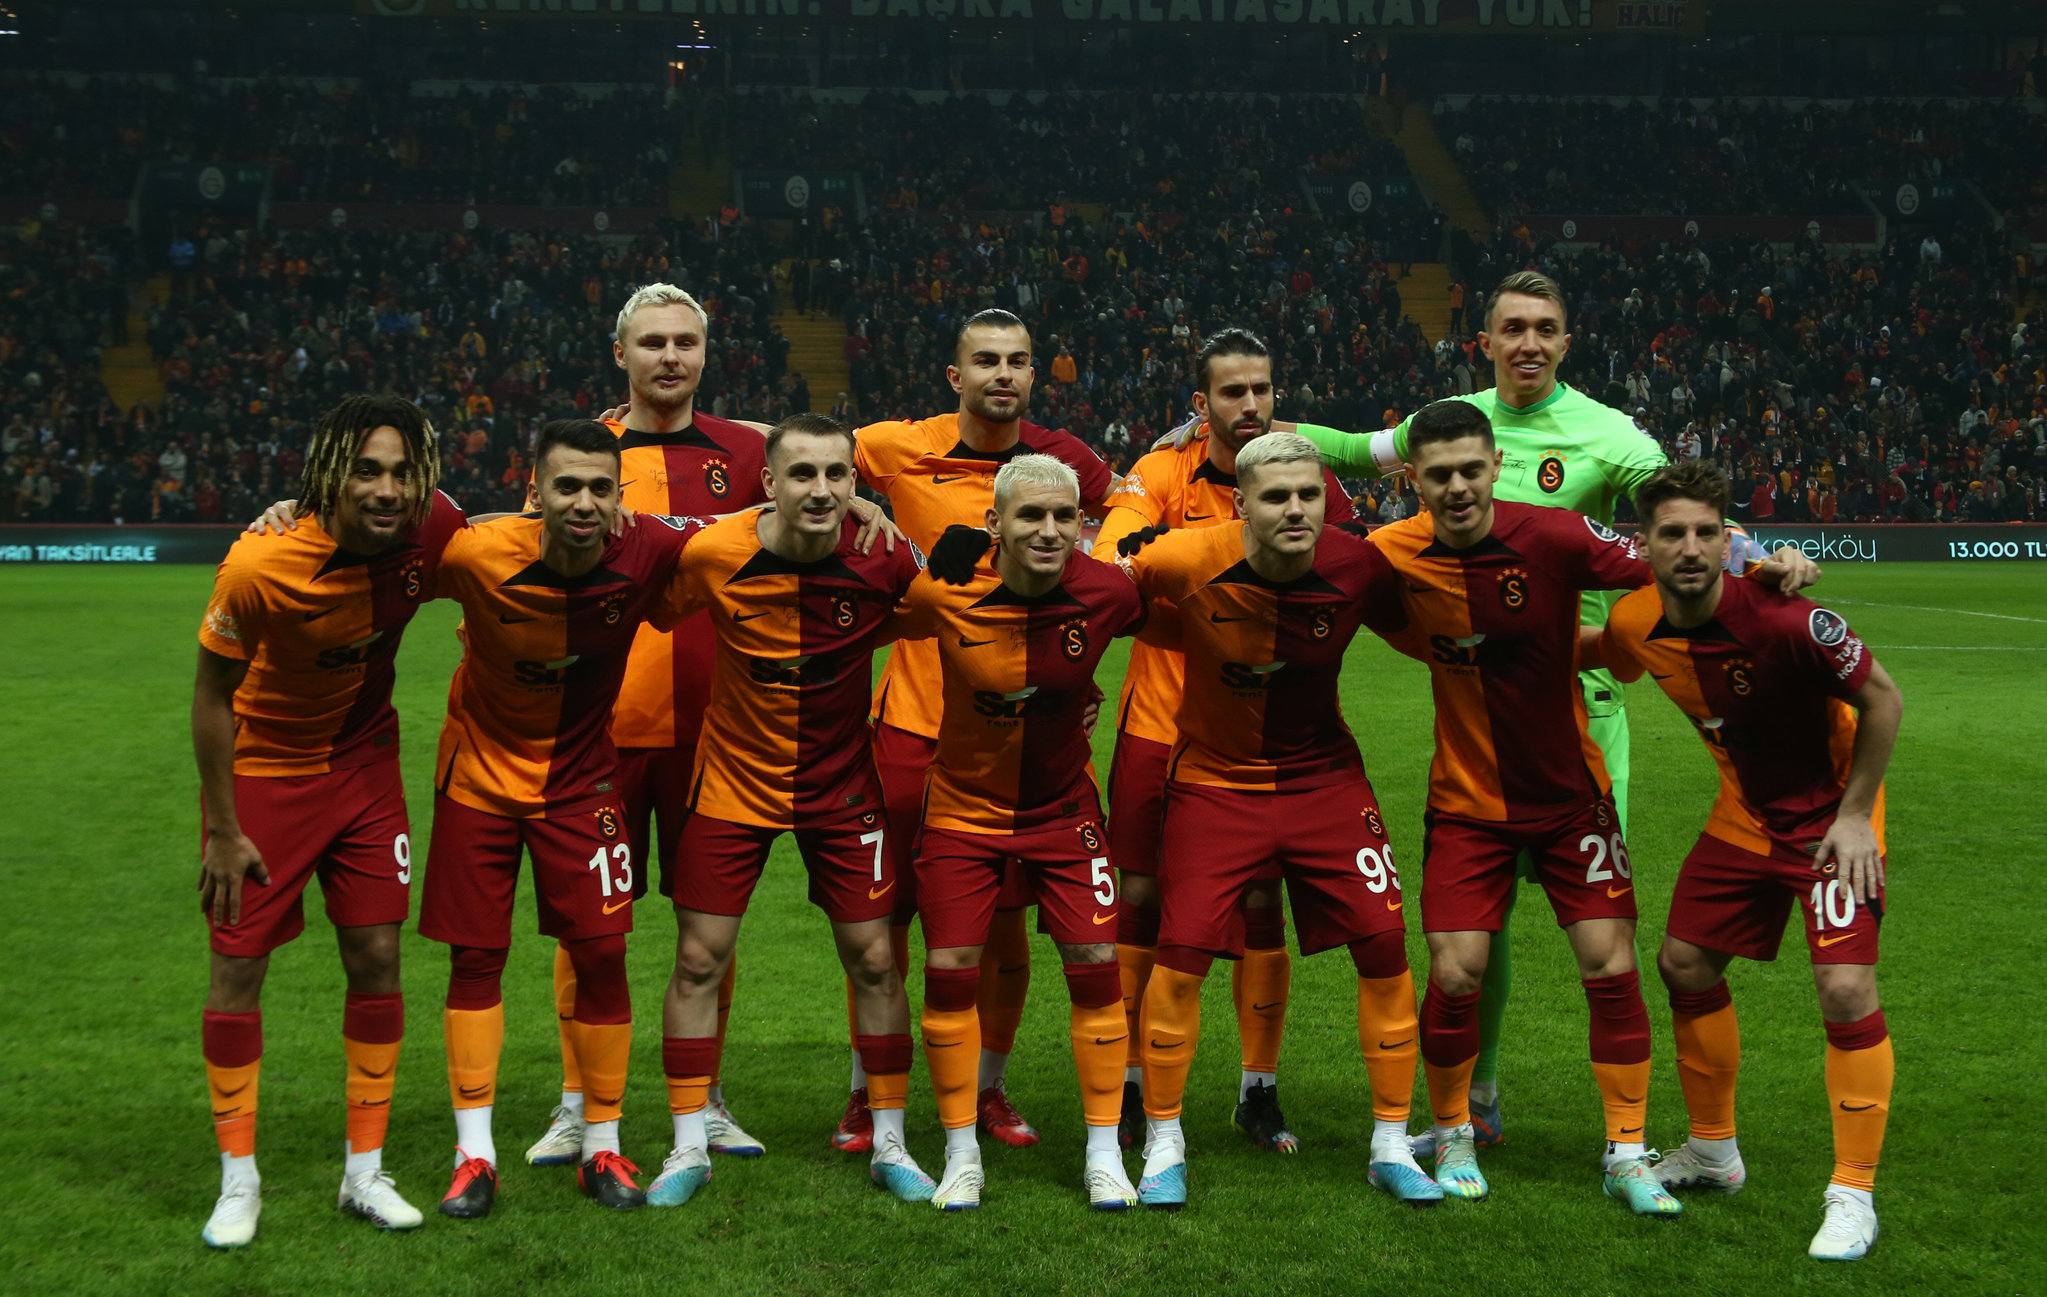 TRANSFER HABERİ: Mourinho’nun göz bebeği Galatasaray’a! Adı hiç duyulmamıştı